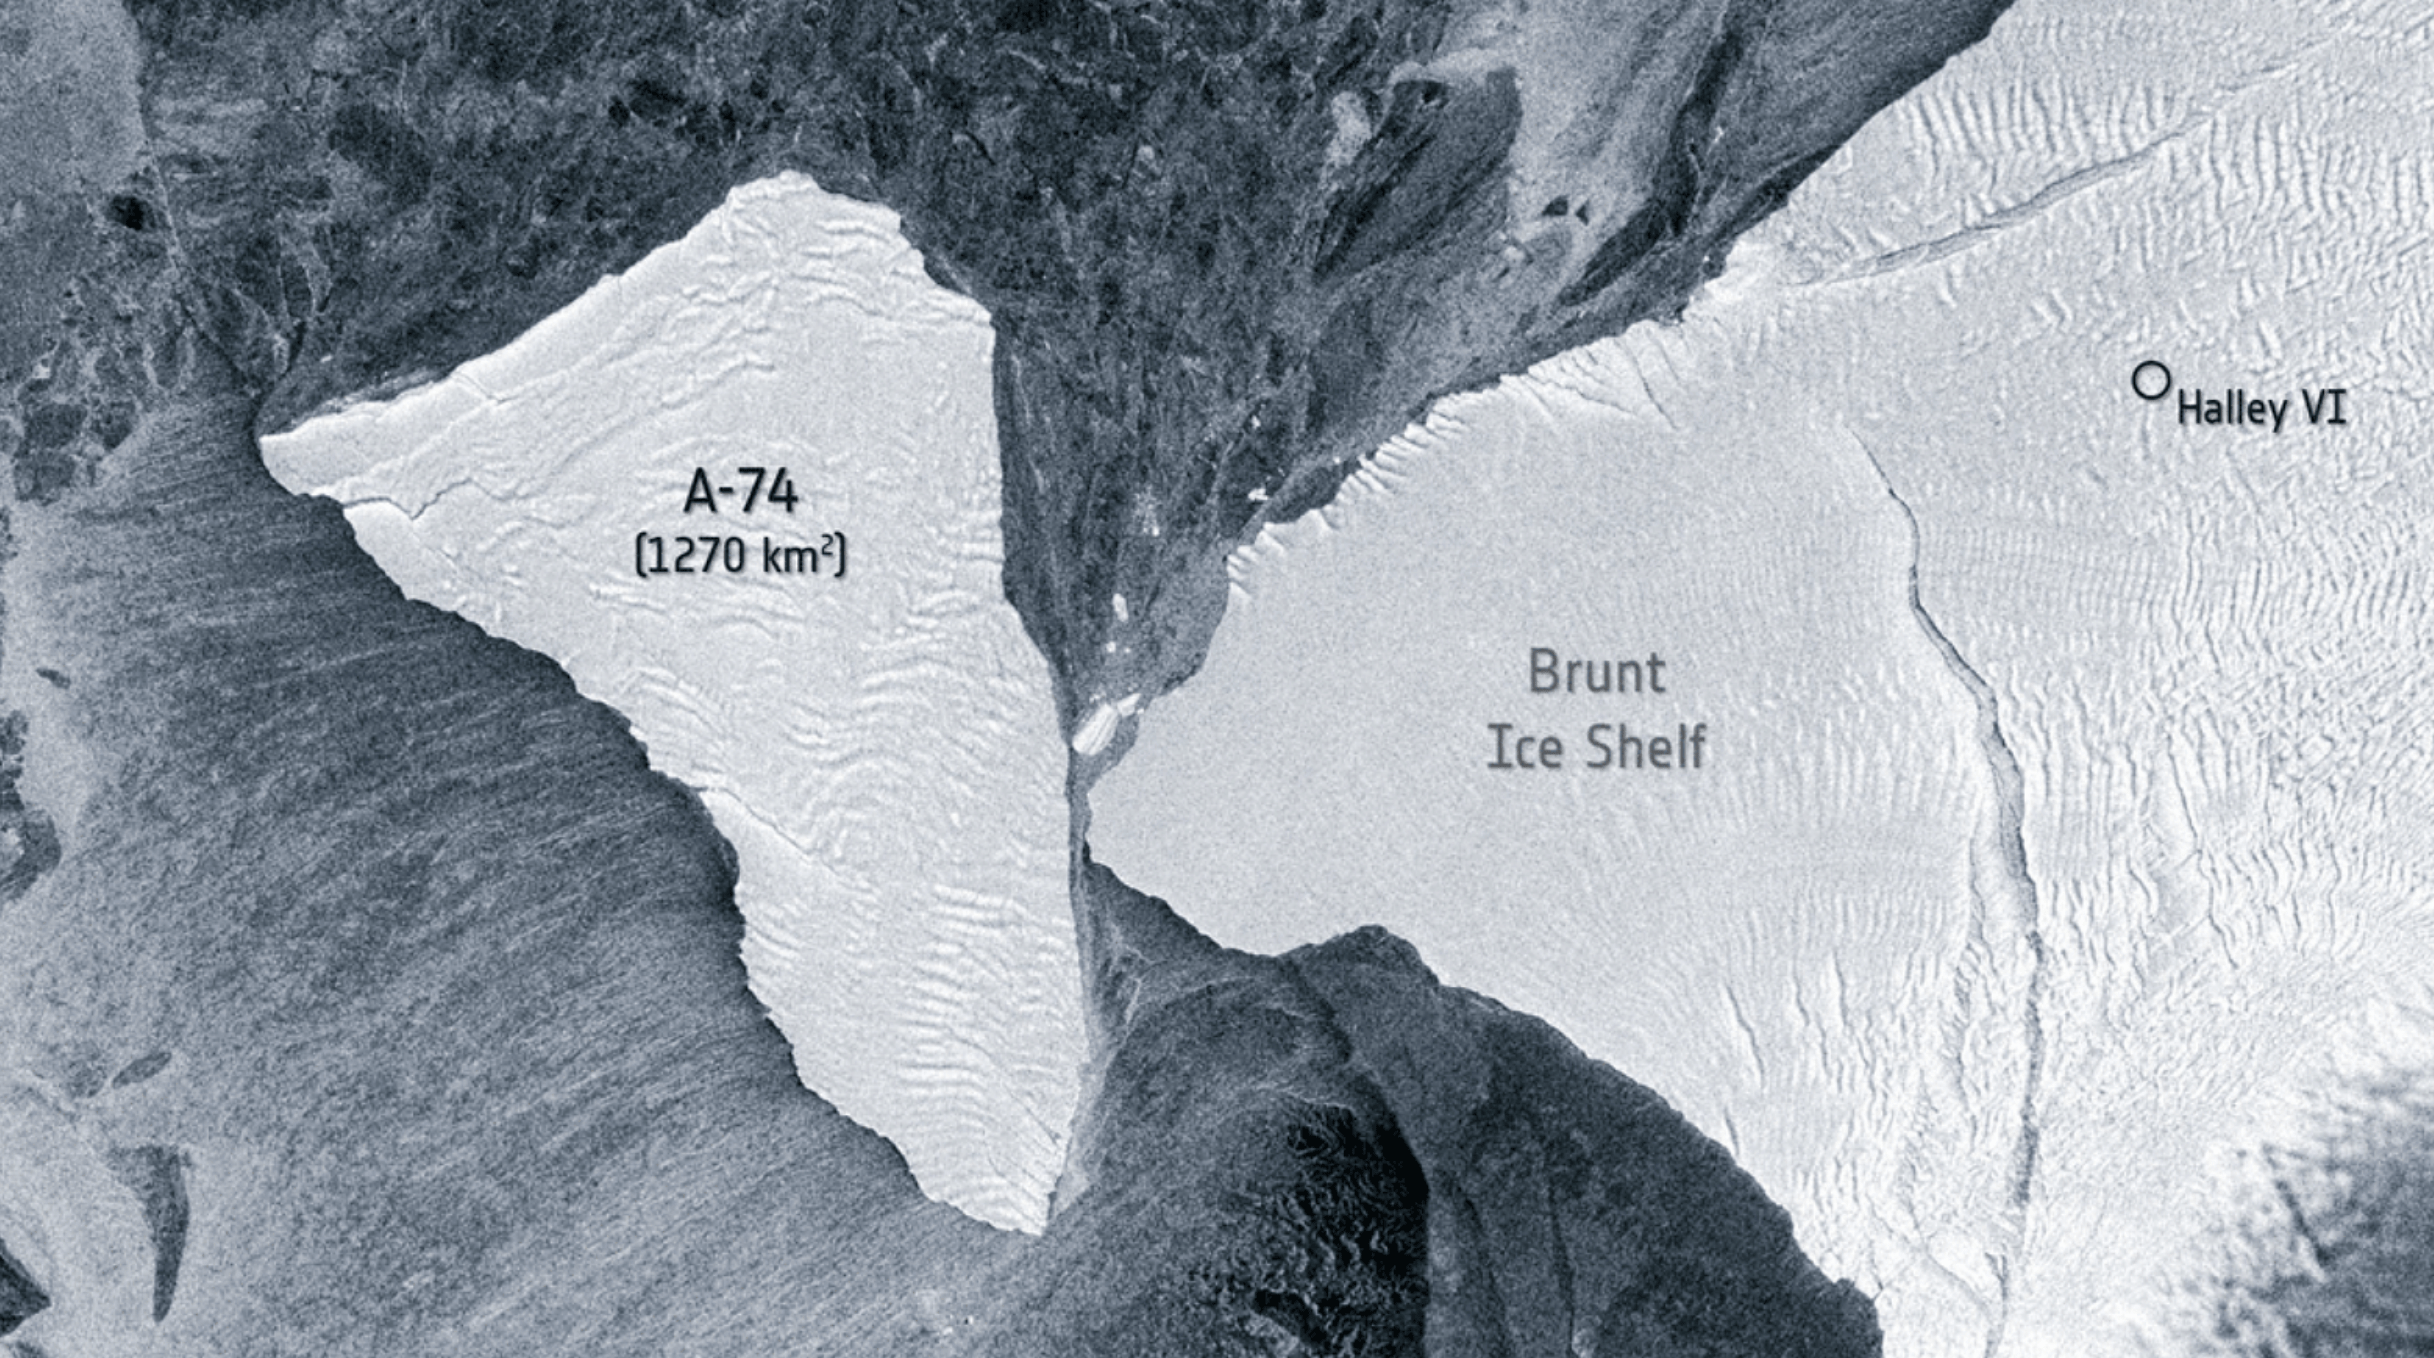 卫星图像展现了A-74冰山旋转着擦过南极冰架的惊险一刻